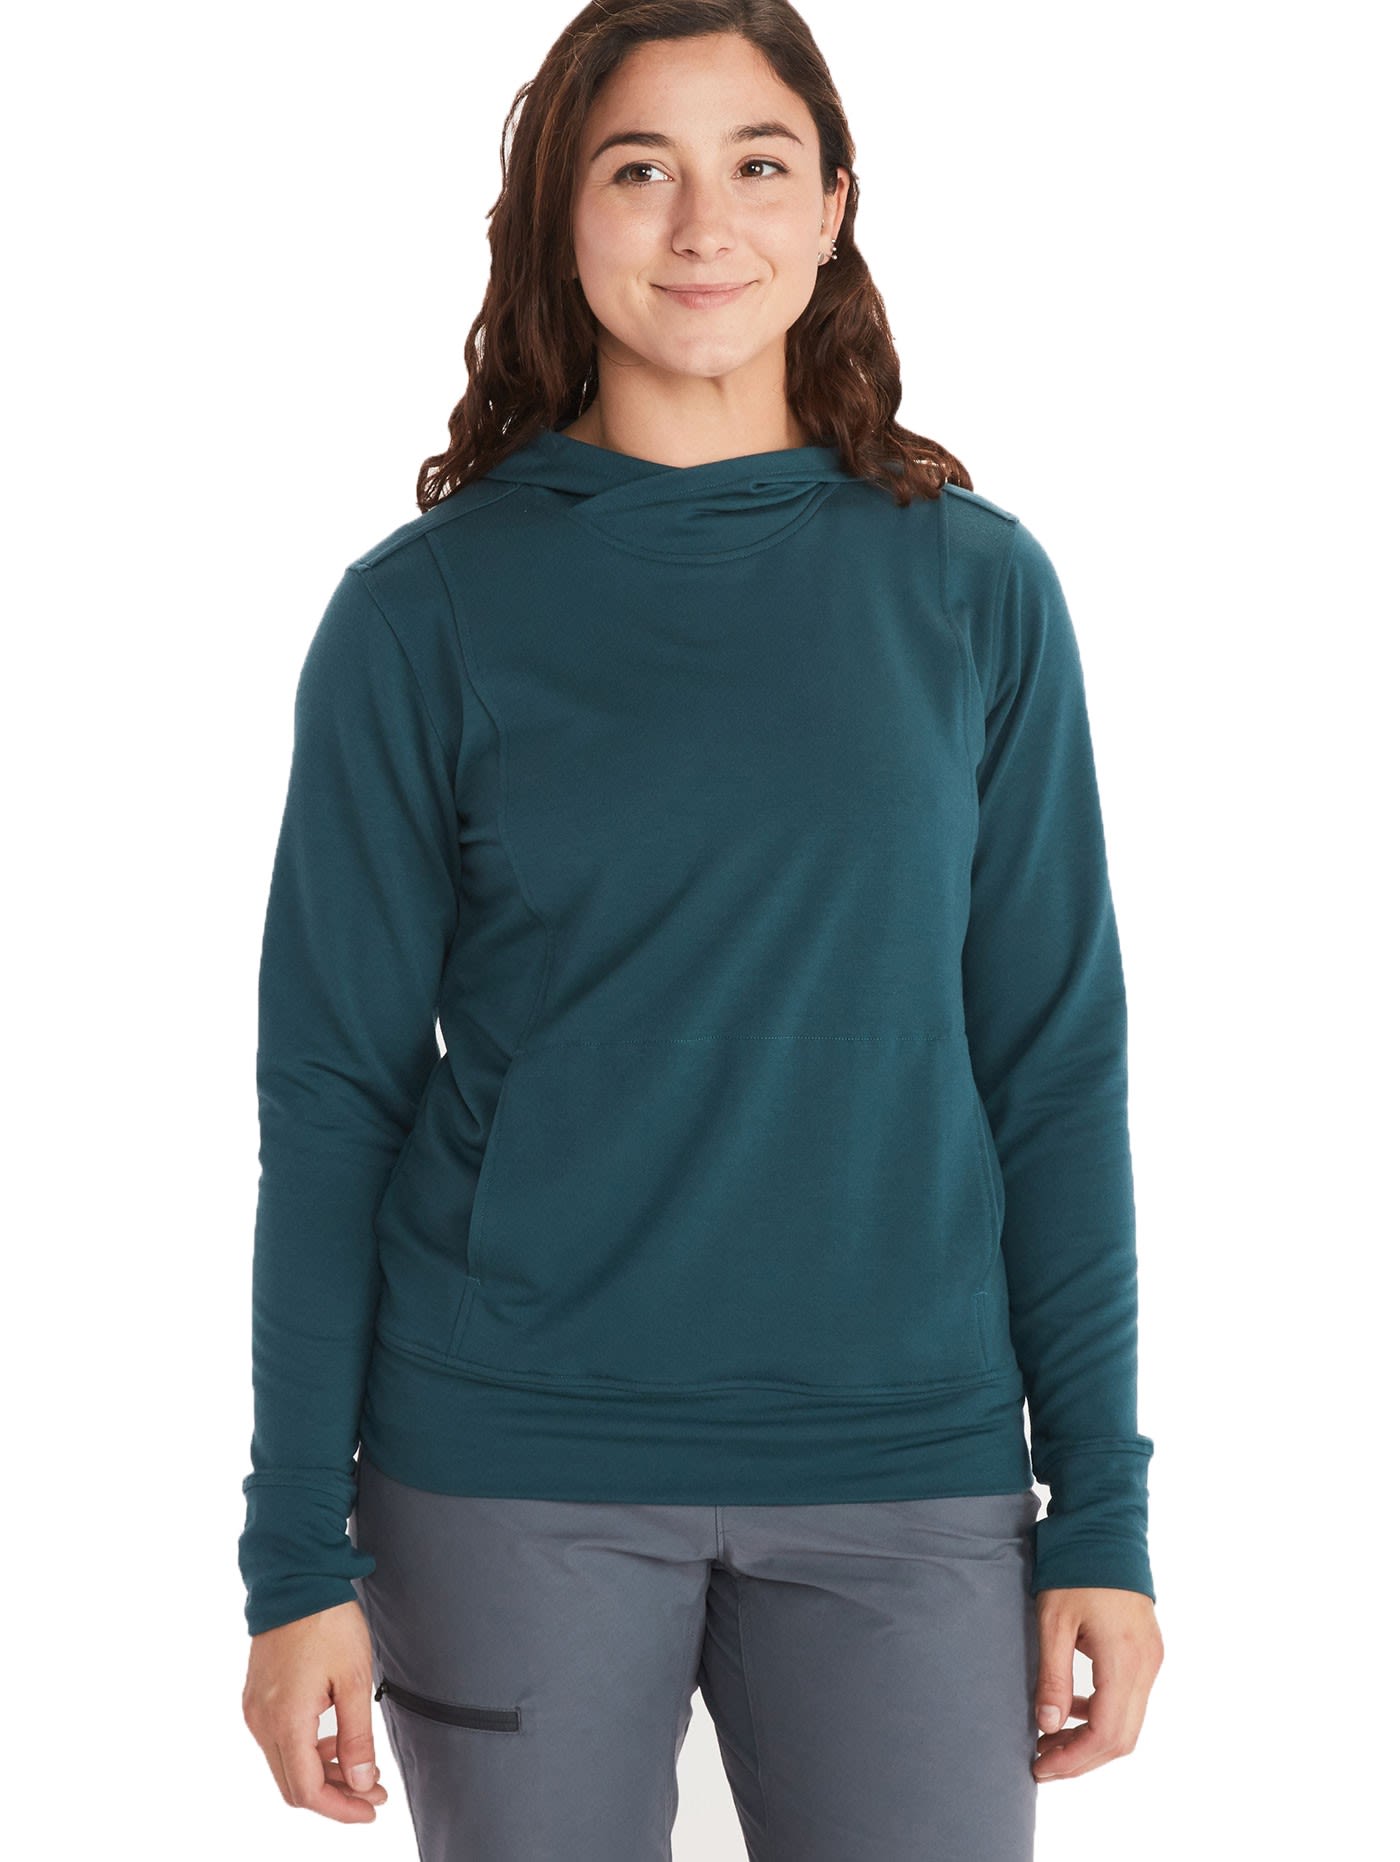 Marmot La Linea Hoody Grn- Female Sweaters und Hoodies- Grsse S - Farbe Stargazer unter Marmot